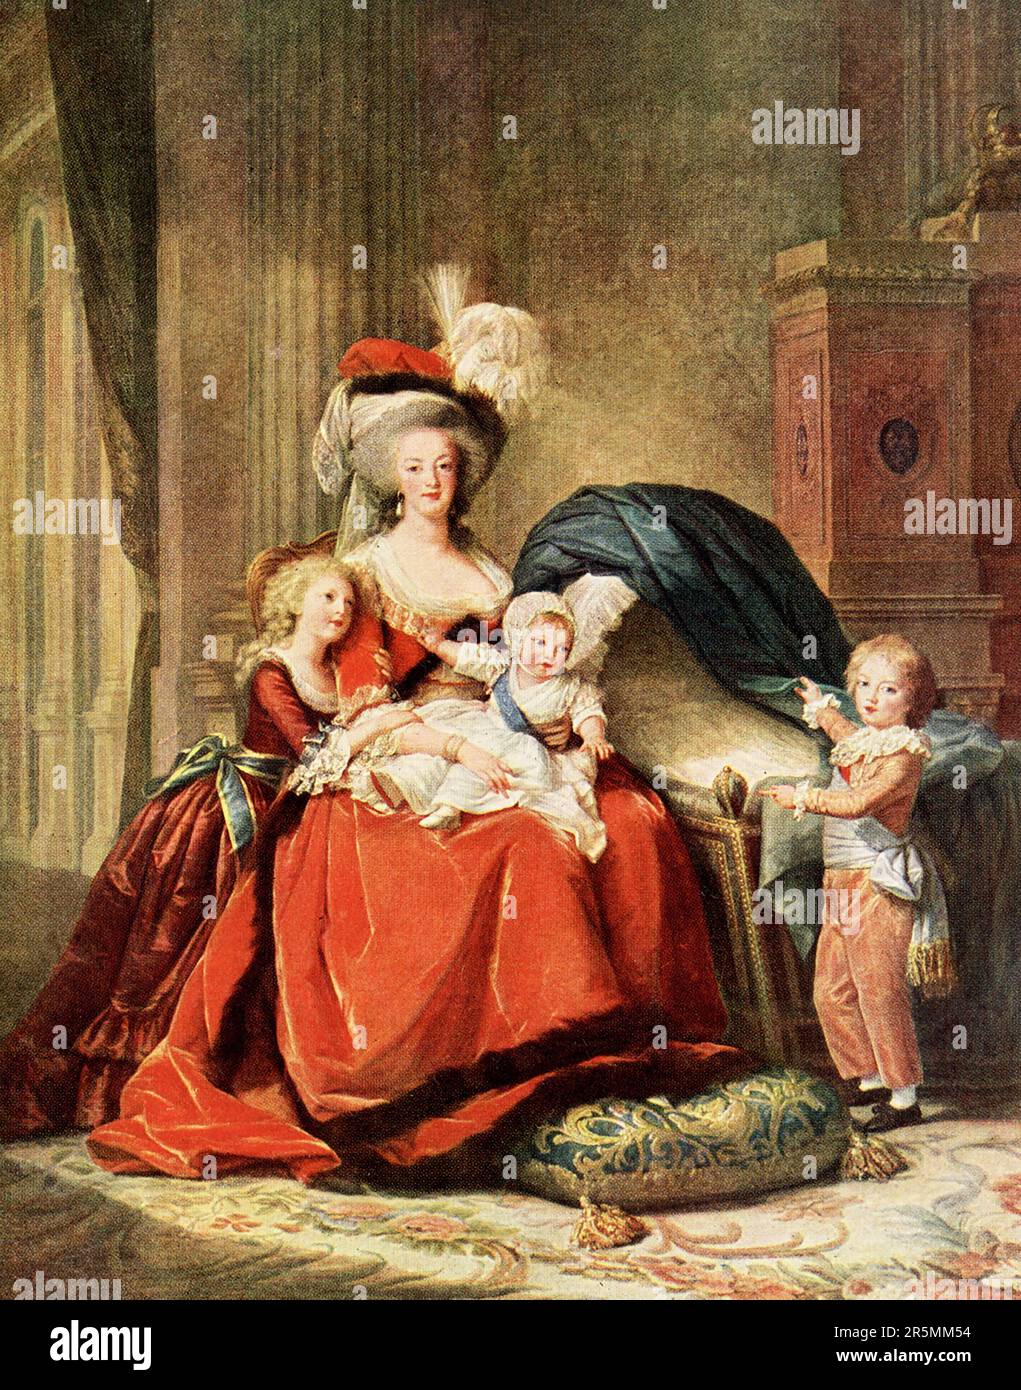 Die Überschrift Anfang 1900er lautet: "Marie Antoinette und ihre Kinder - in Versailles. Das letzte Porträt, das Vigee Le Brun von der todgeweihten Königin malte, war die Leinwand, die in Versailles hängt, bekannt als "Marie Antoinette und ihr Kind", in der die Königin neben einer Wiege sitzt, mit dem kleinen Herzog der Normandie auf dem Knie, Die kleine Madame royale an ihrer Seite und der kleine Dauphin, der in die Wiege zeigt. Als die Türen des Salons von 1788 geöffnet wurden, war das Gemälde noch nicht ganz fertig und der dafür reservierte Rahmen blieb einige Tage lang leer. Es war am Vorabend von dem, was beco geschah Stockfoto